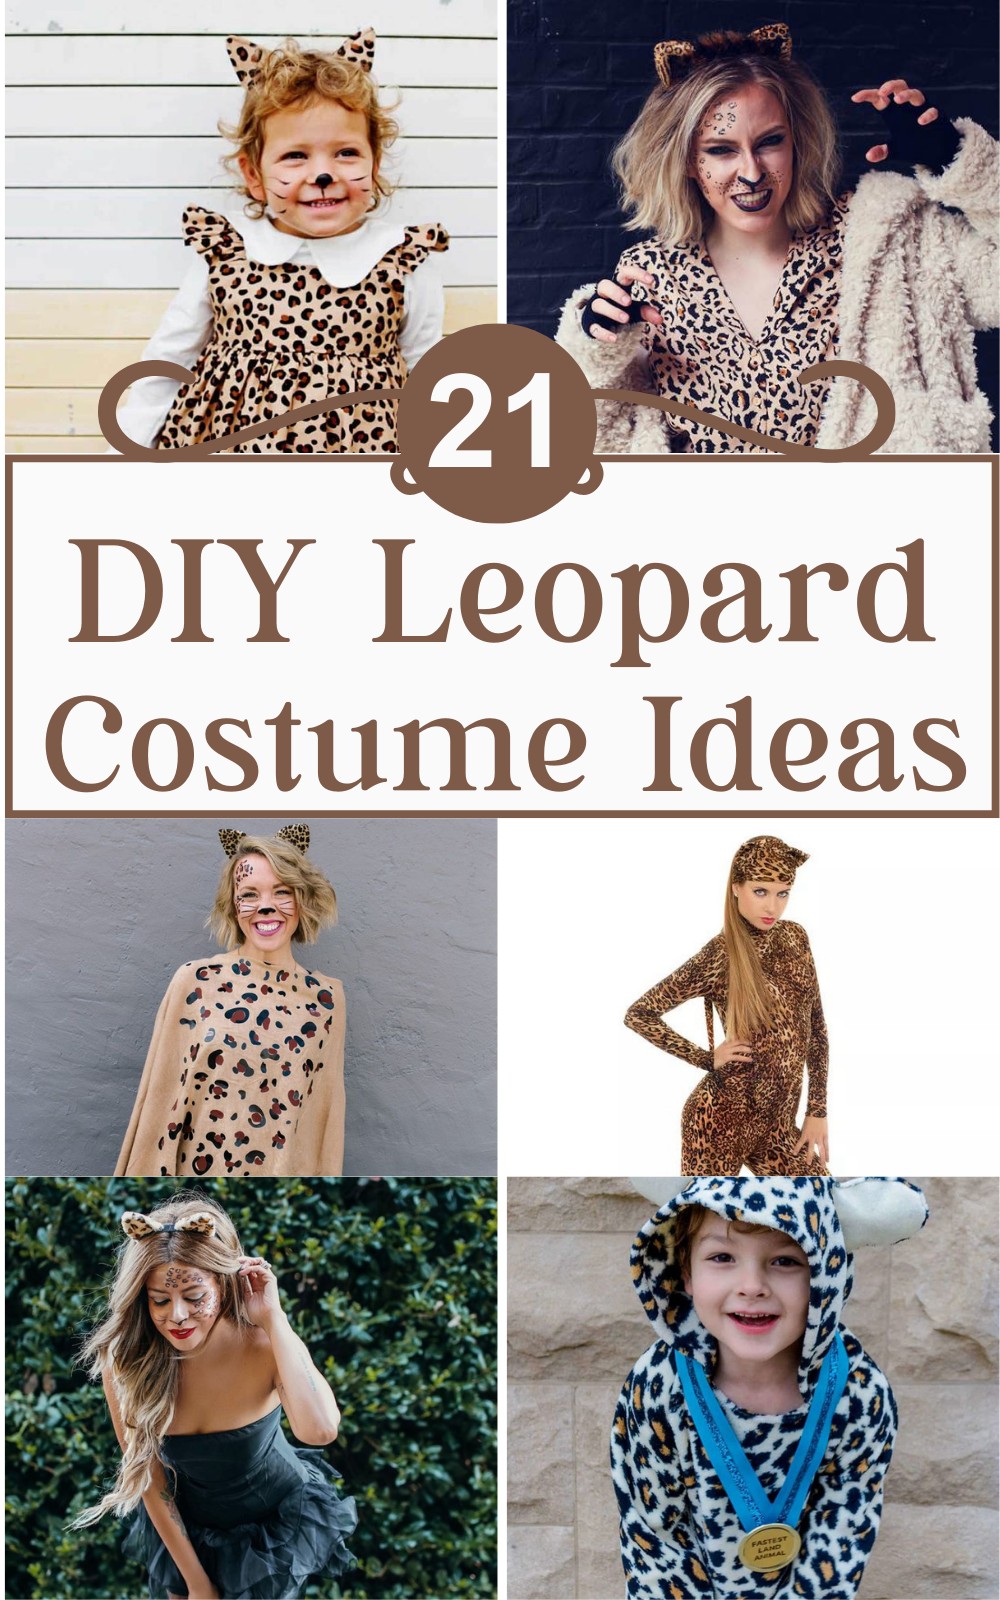 21 DIY Leopard Costume Ideas